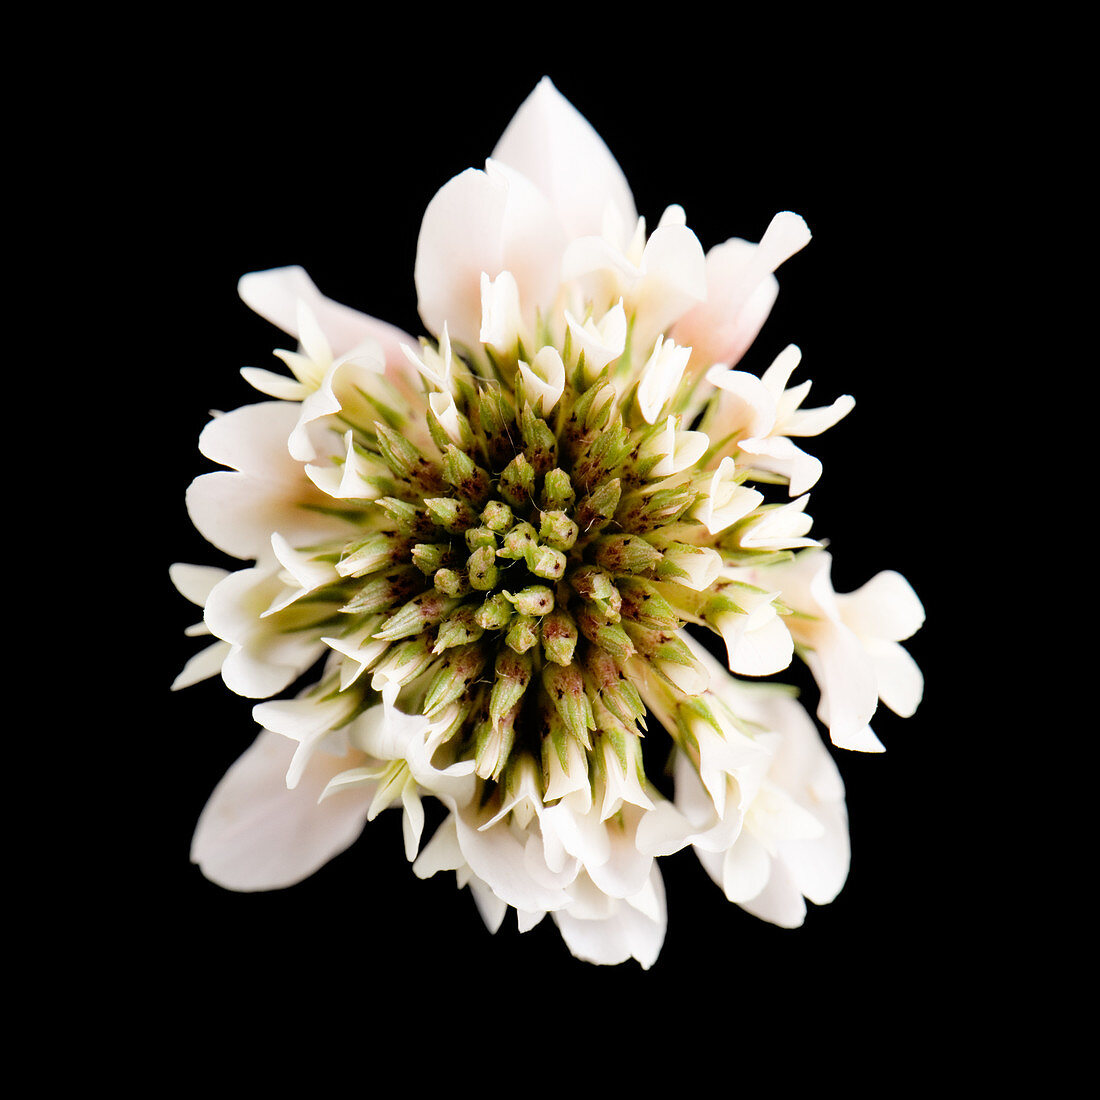 Clover (Trifolium sp.)